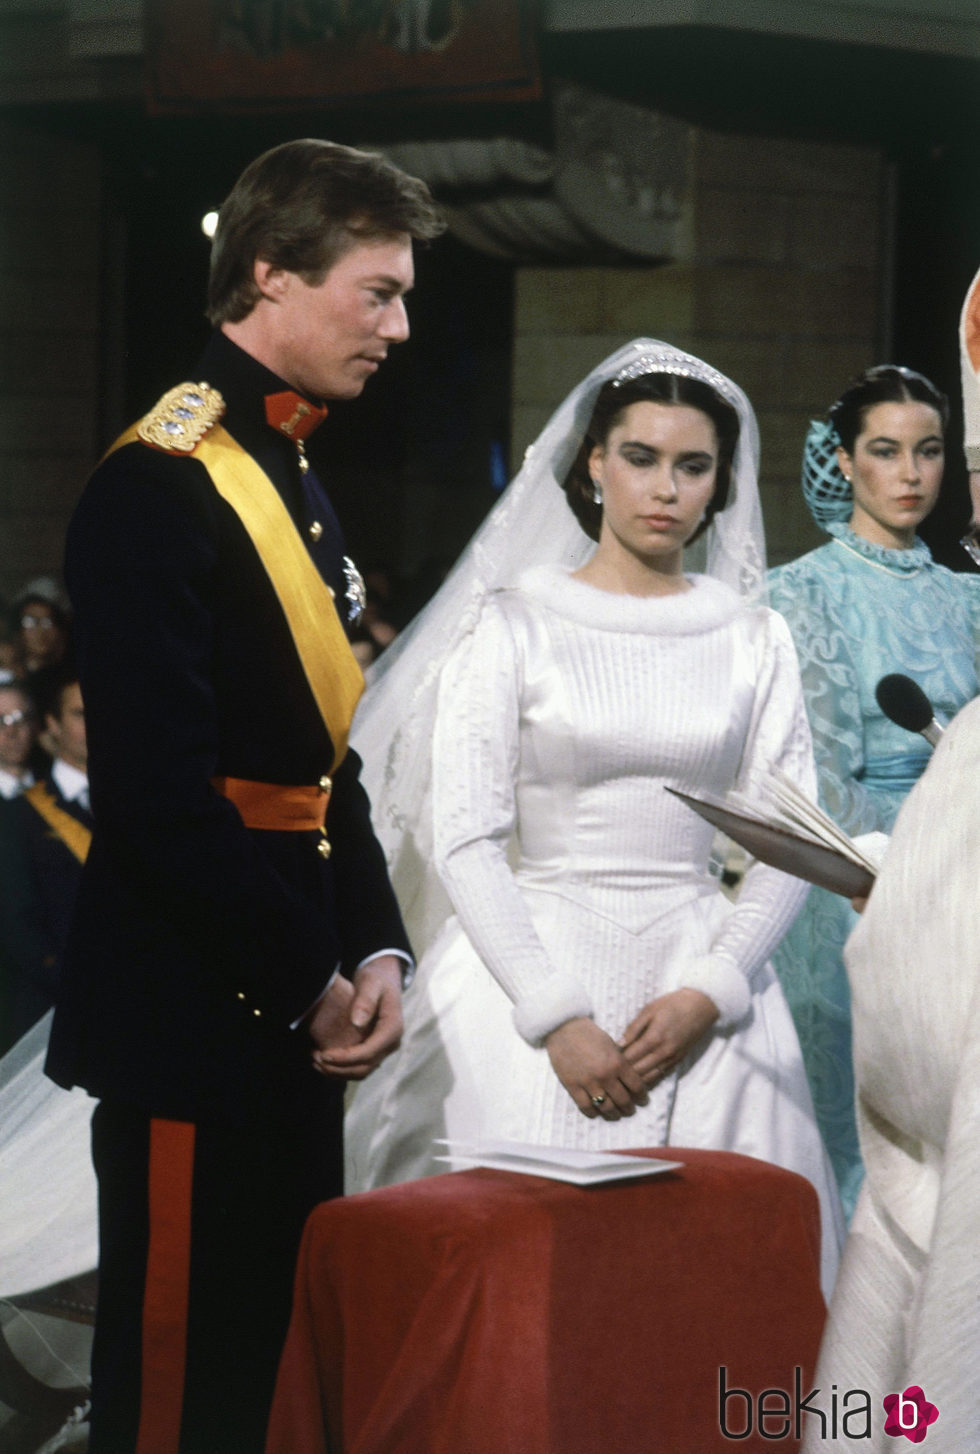 Enrique y María Teresa de Luxemburgo el día de su boda